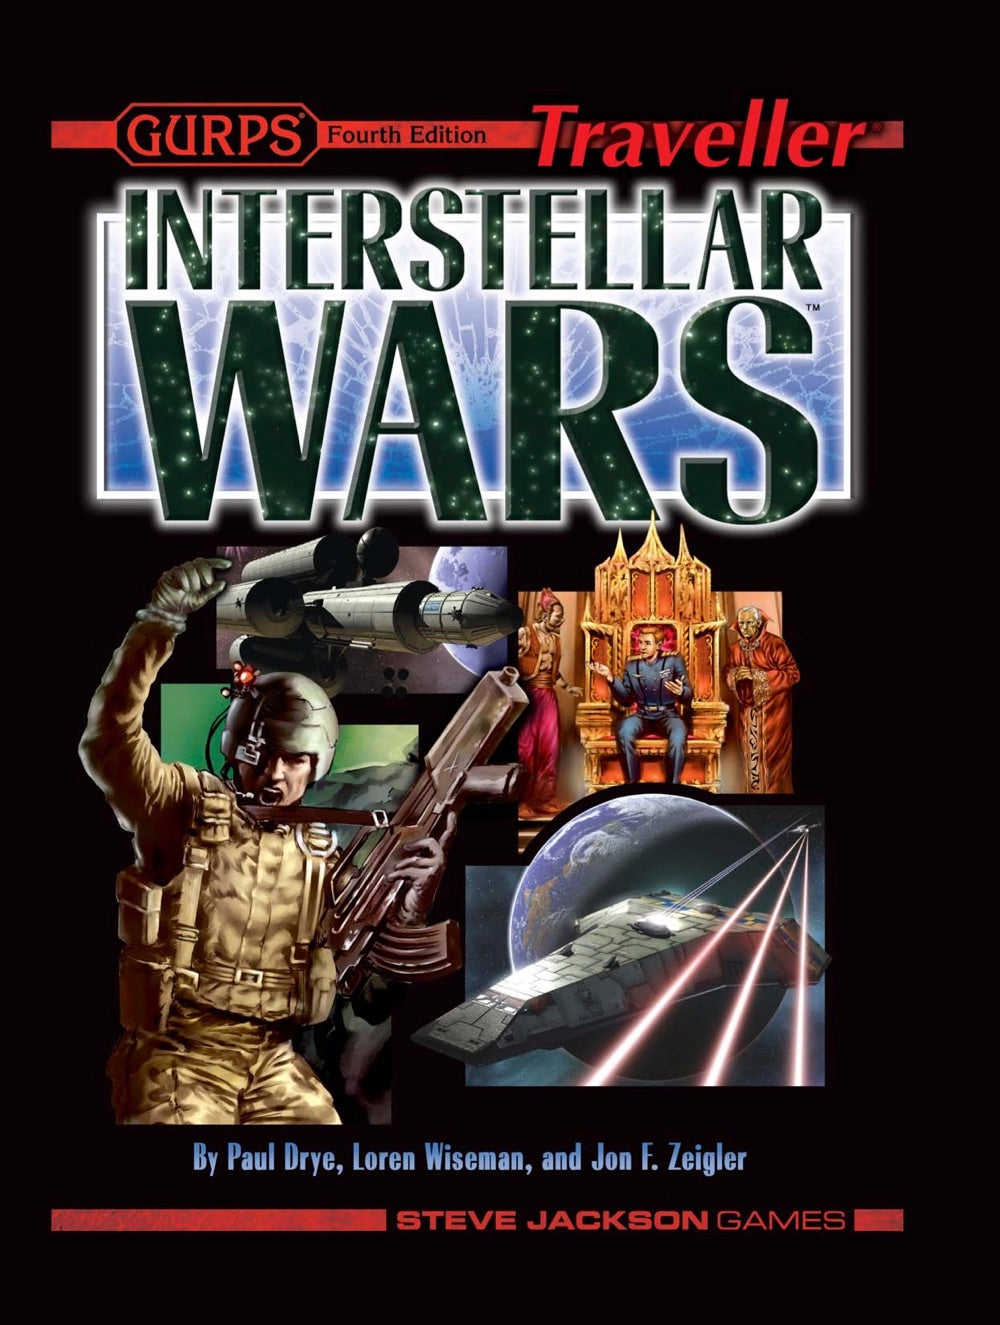 GURPS Traveller: Interstellar Wars